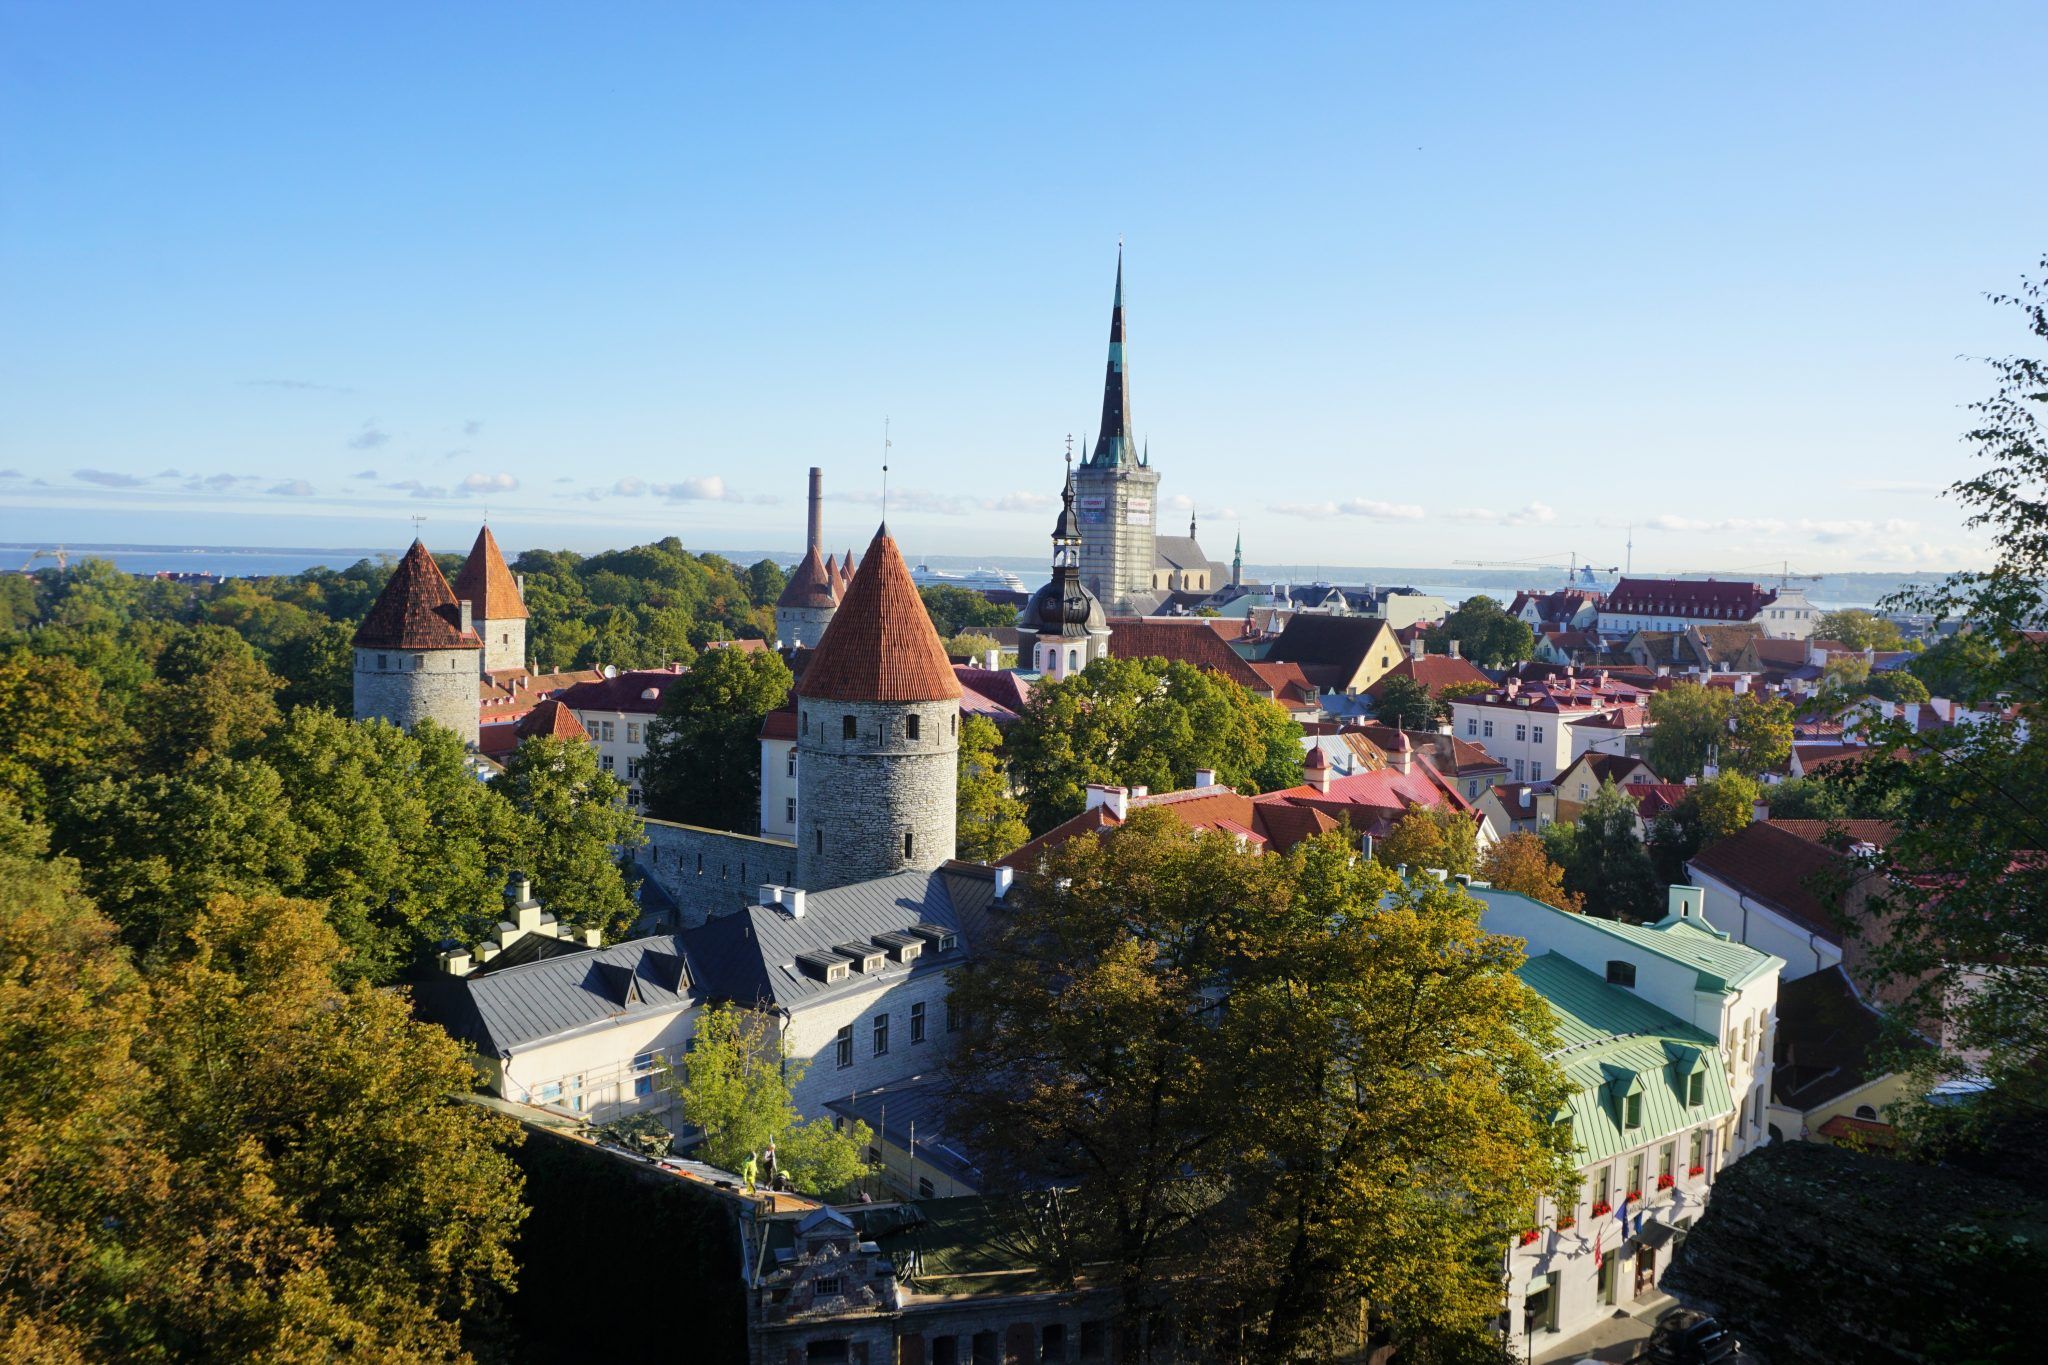 Lower Town in Tallinn, Estonia